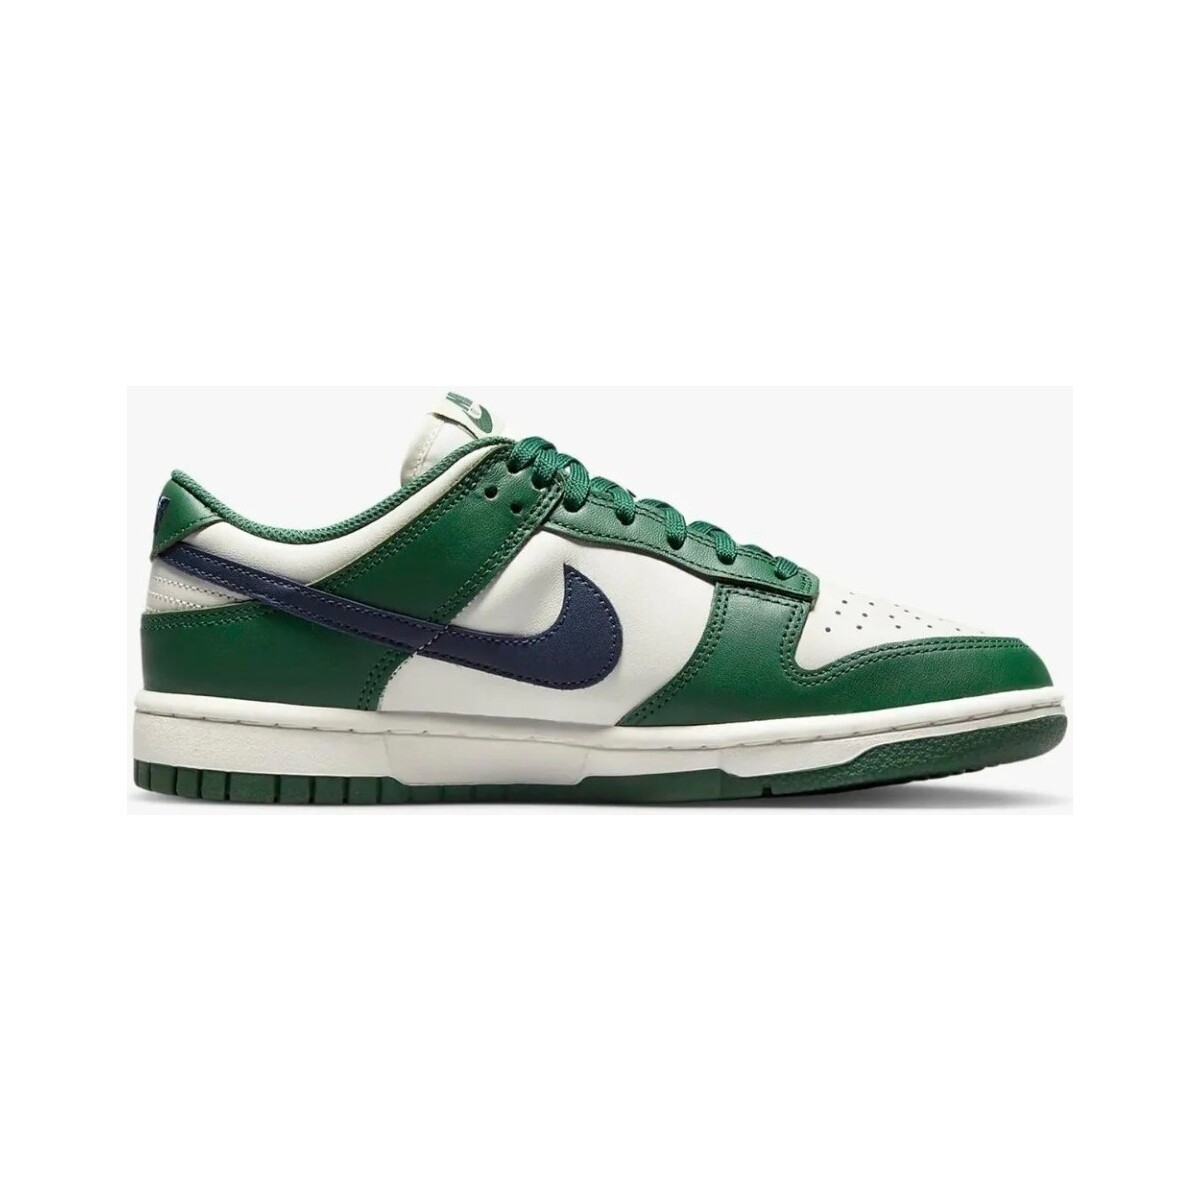 Sapatos Homem Sapatilhas Nike DD1503-300 Verde